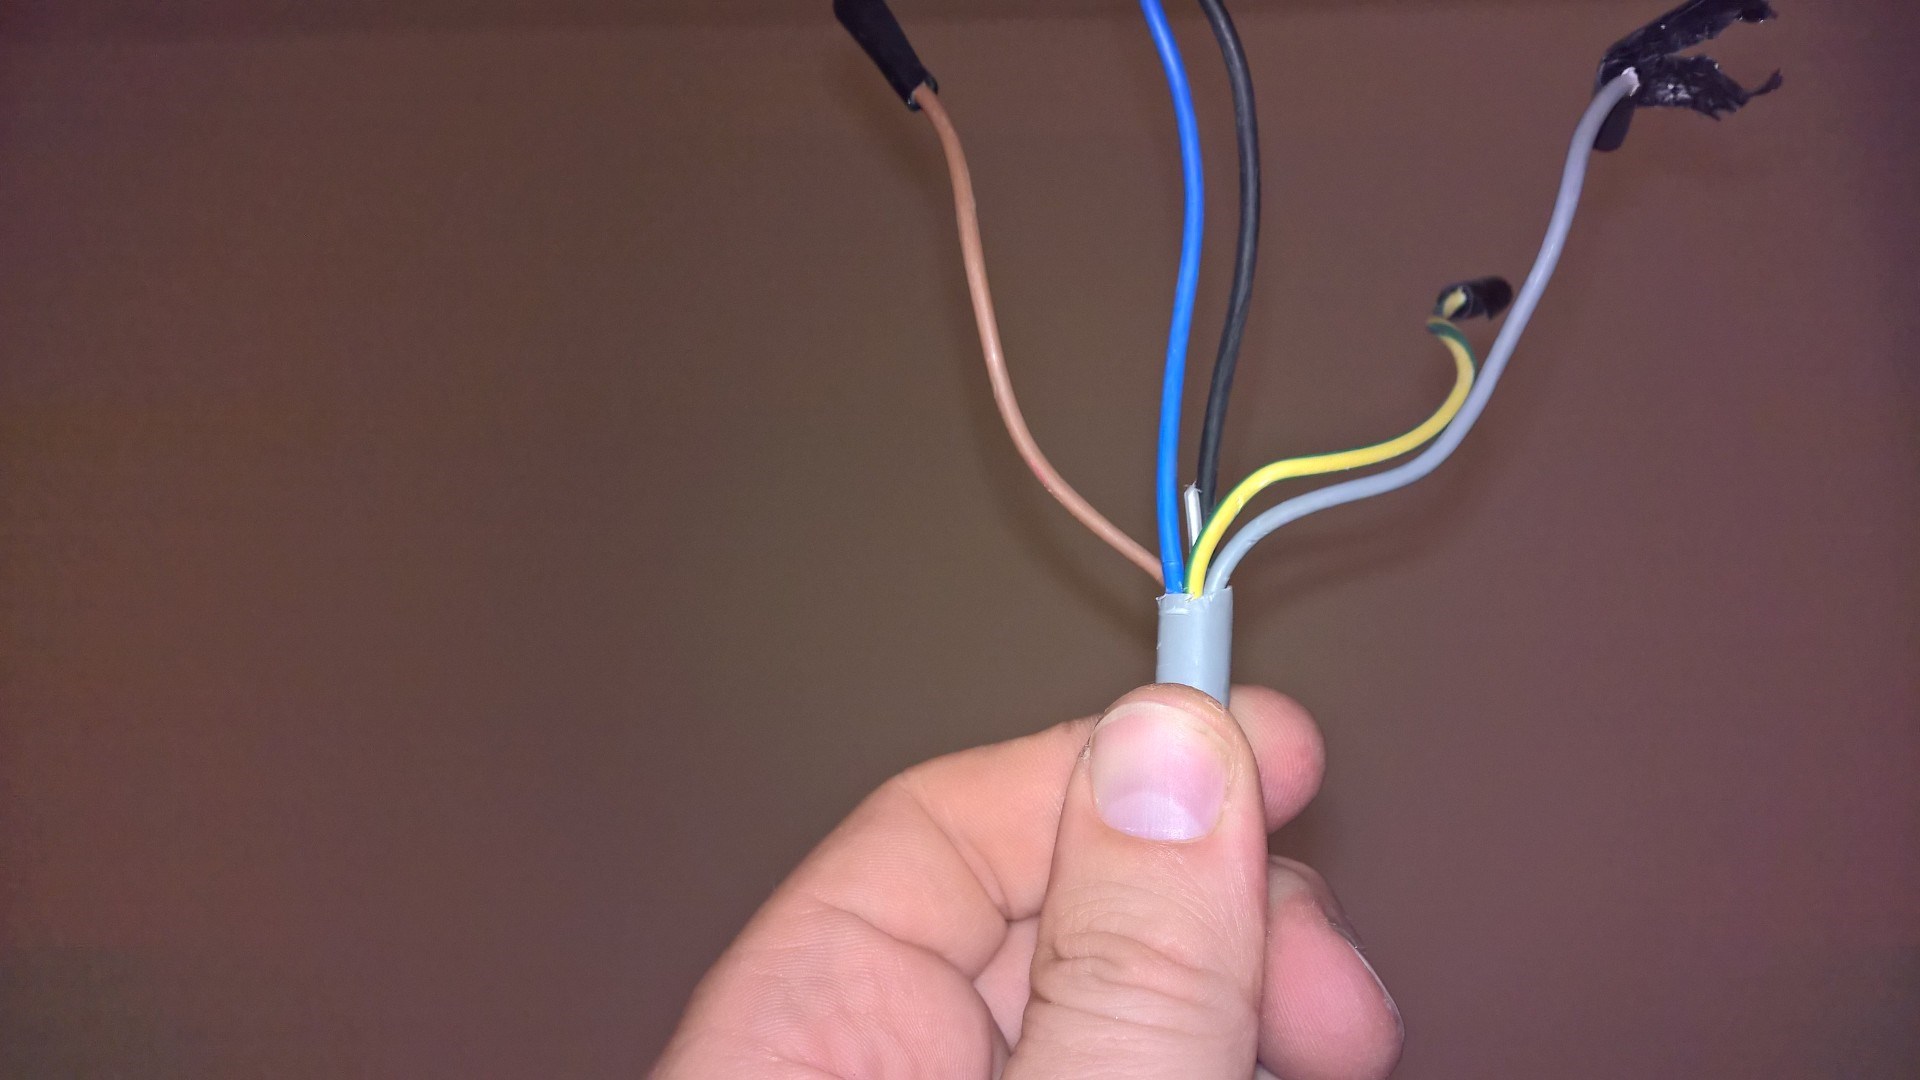 Eksotisk kabel - hvor finner jeg en erstatning? - WP_20150827_21_44_40_Pro.jpg - mexigolf